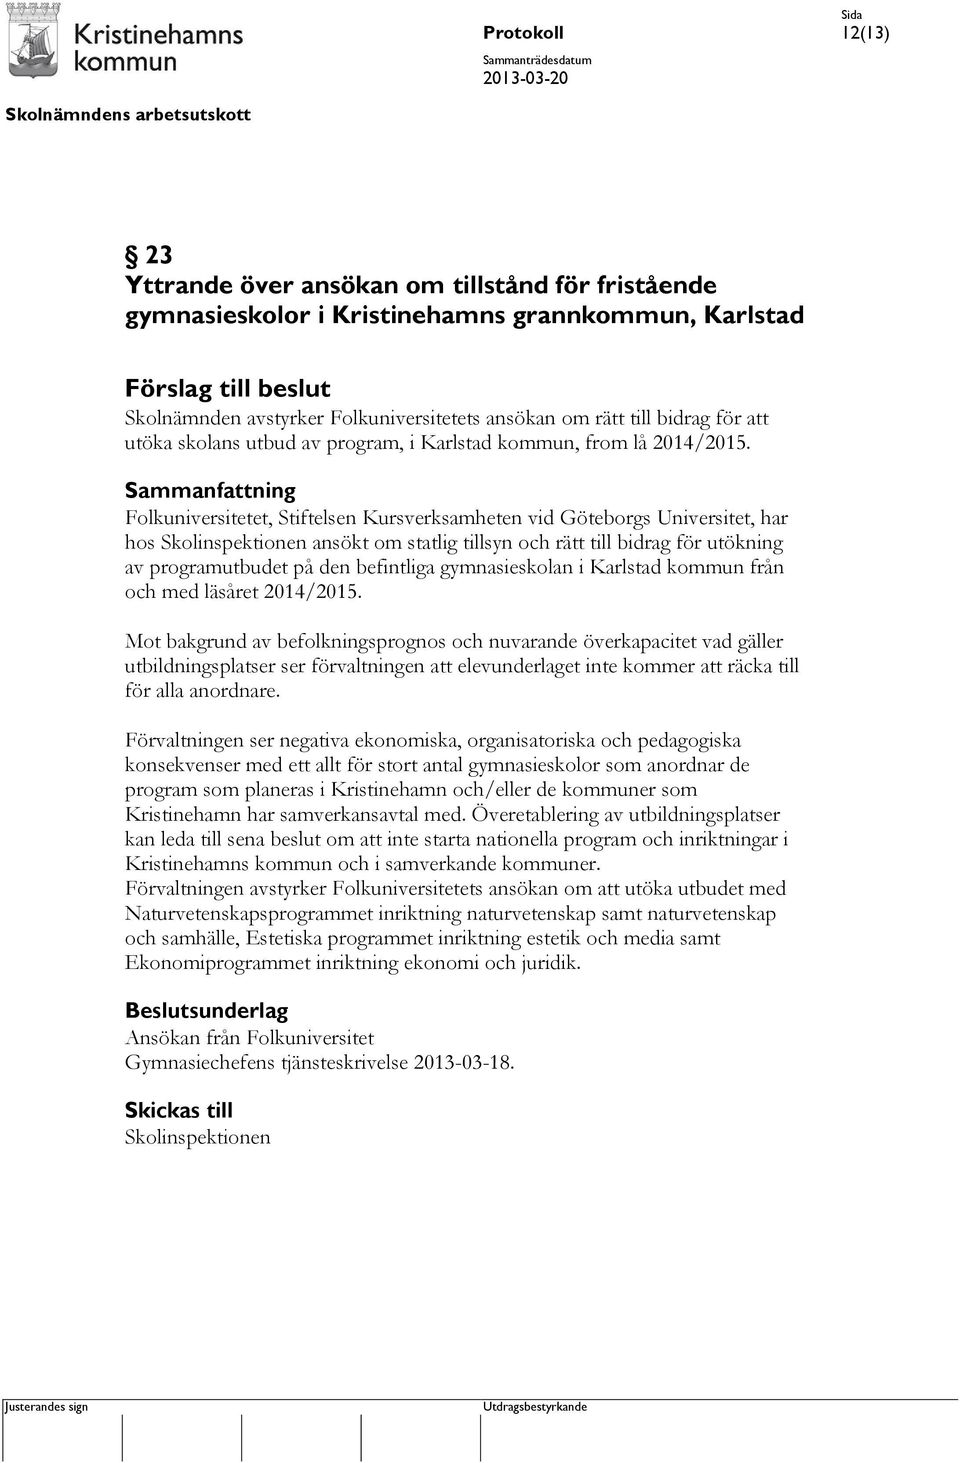 Folkuniversitetet, Stiftelsen Kursverksamheten vid Göteborgs Universitet, har hos Skolinspektionen ansökt om statlig tillsyn och rätt till bidrag för utökning av programutbudet på den befintliga